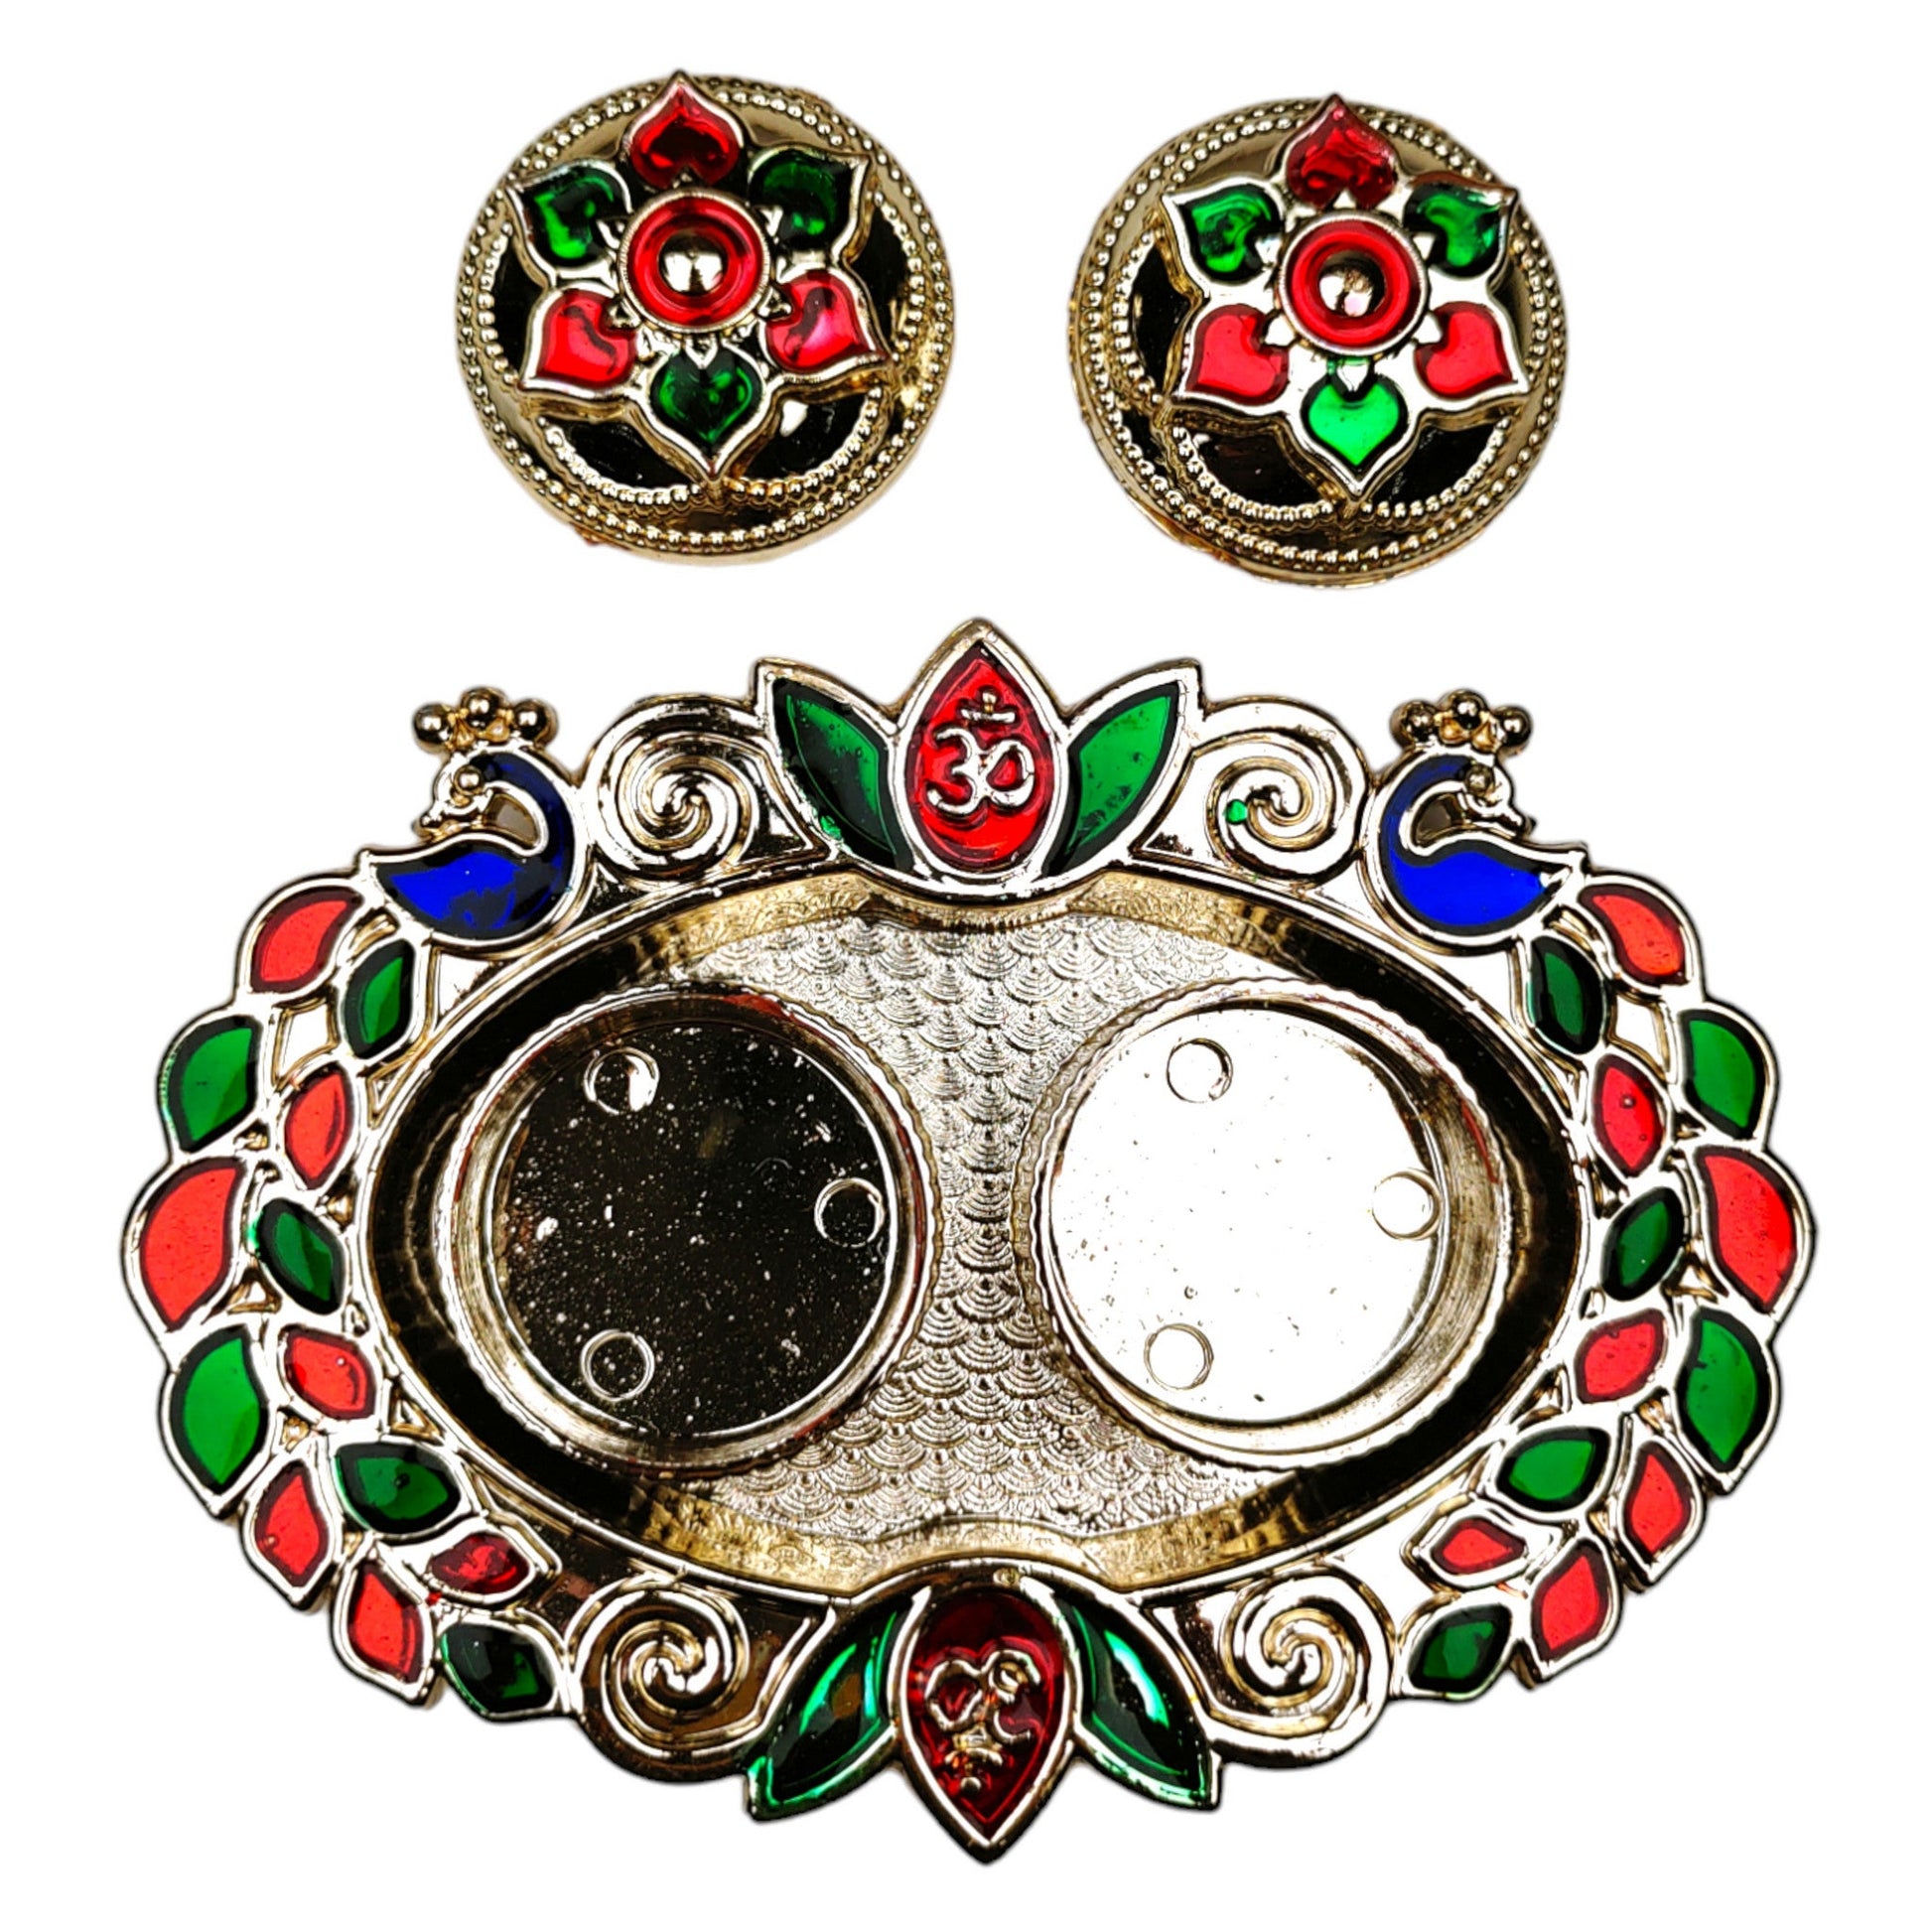 Indian Petals roli-chawal-decorative-platter-plate-13488-91